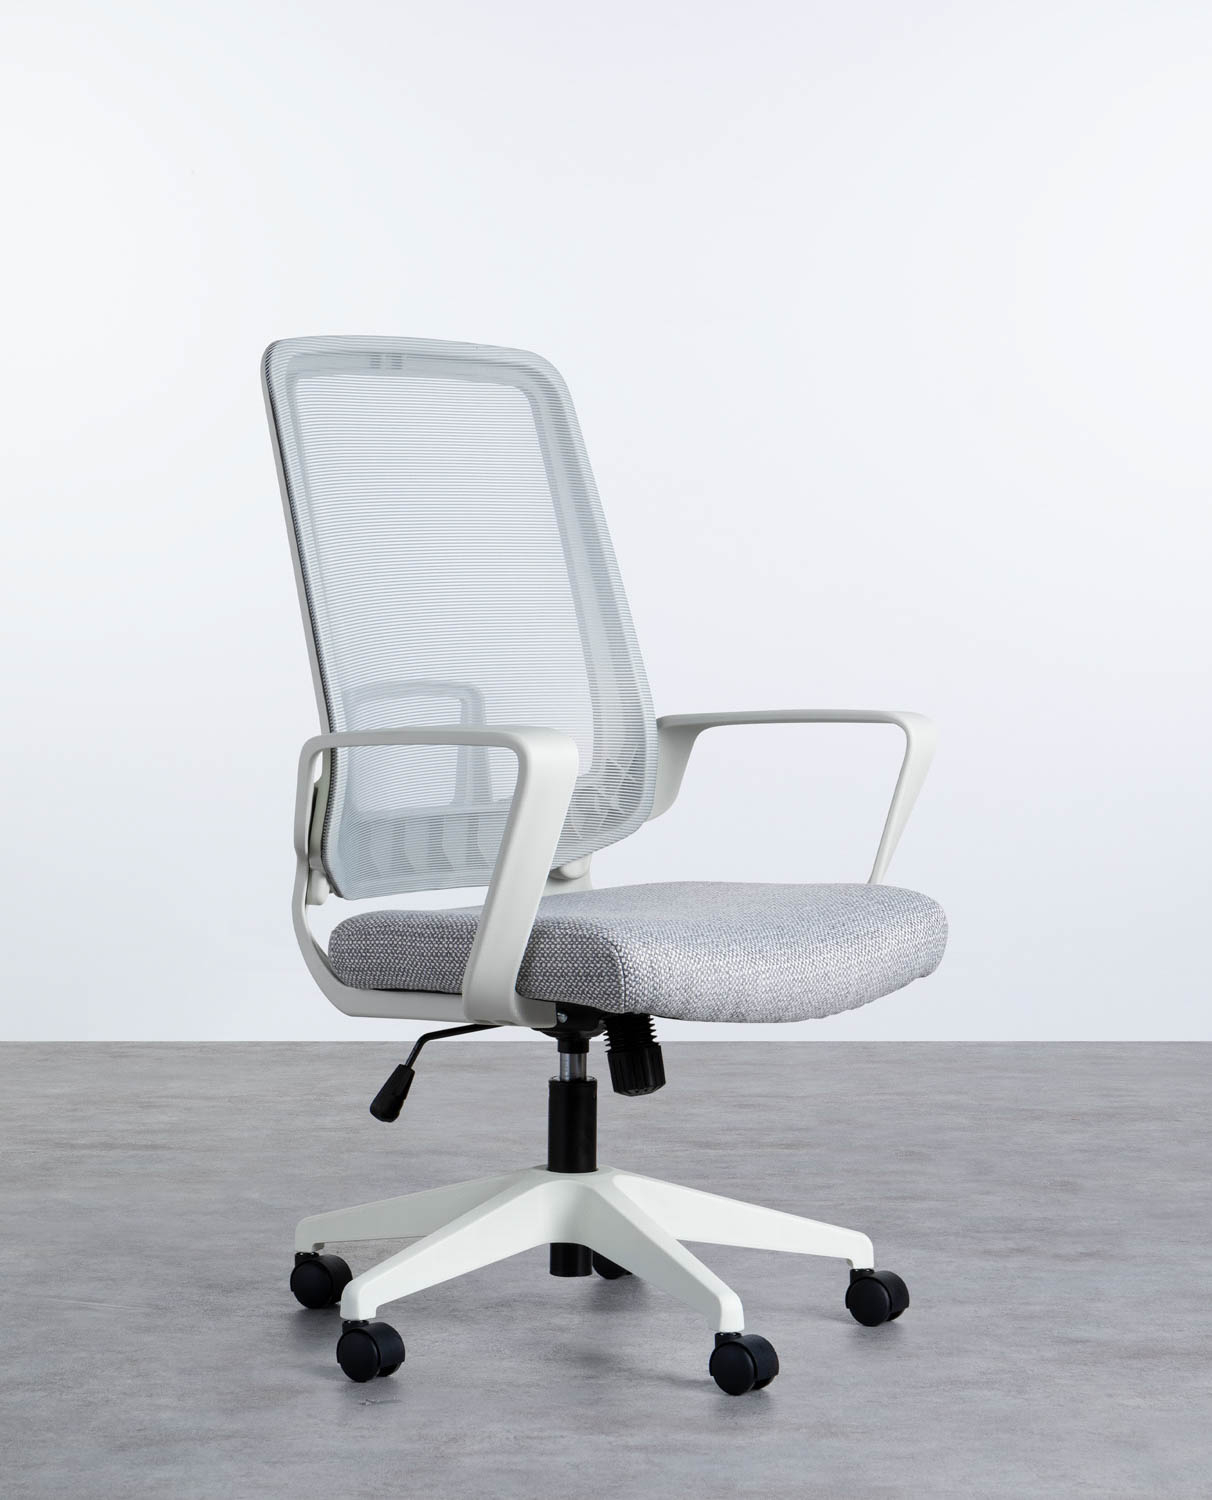 Comoda per questa sedia da ufficio ergonomica in tessuto nero